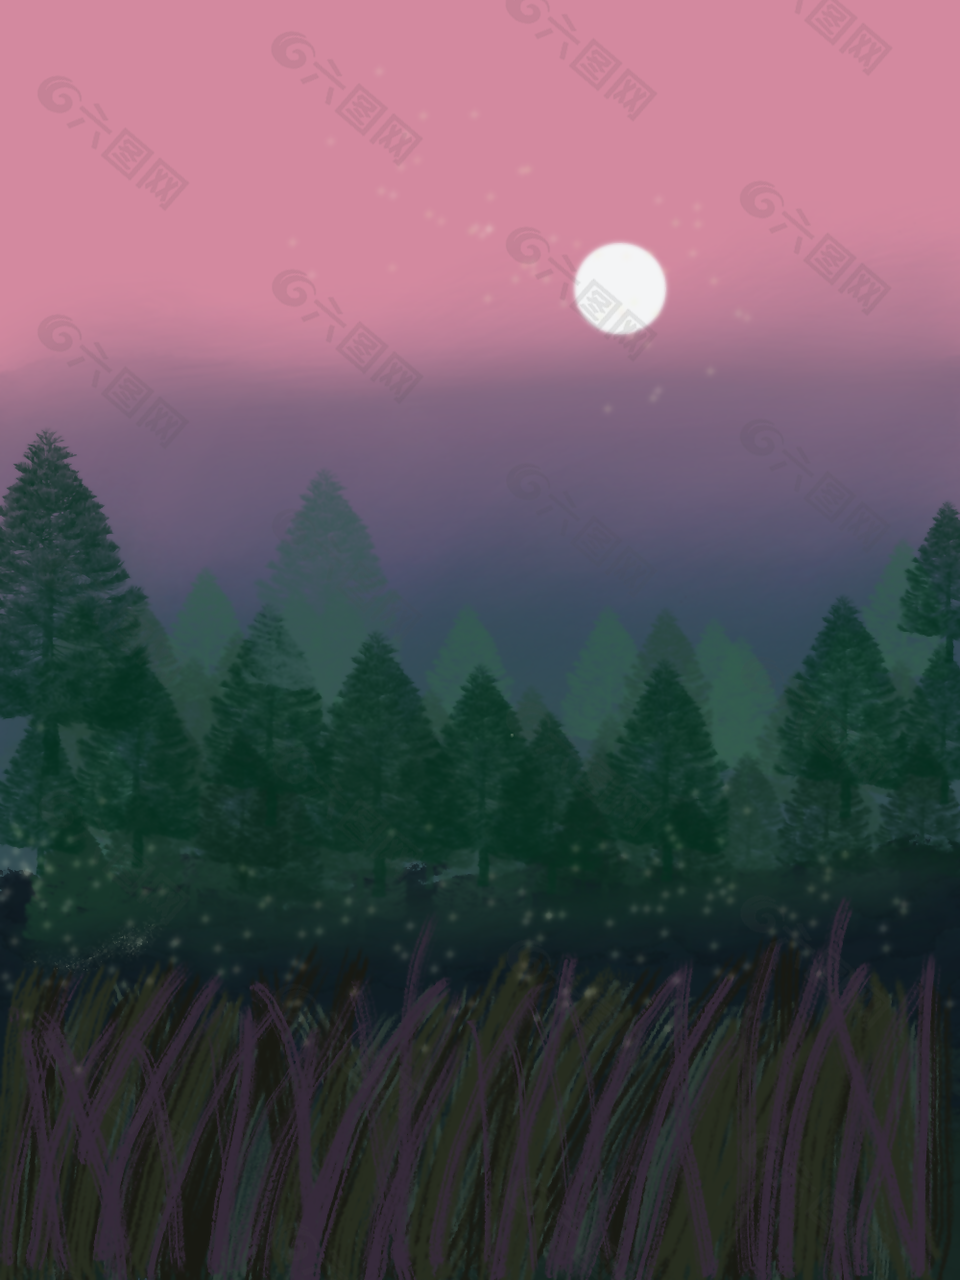 个性创意唯美手绘风山林月亮夜景素材设计